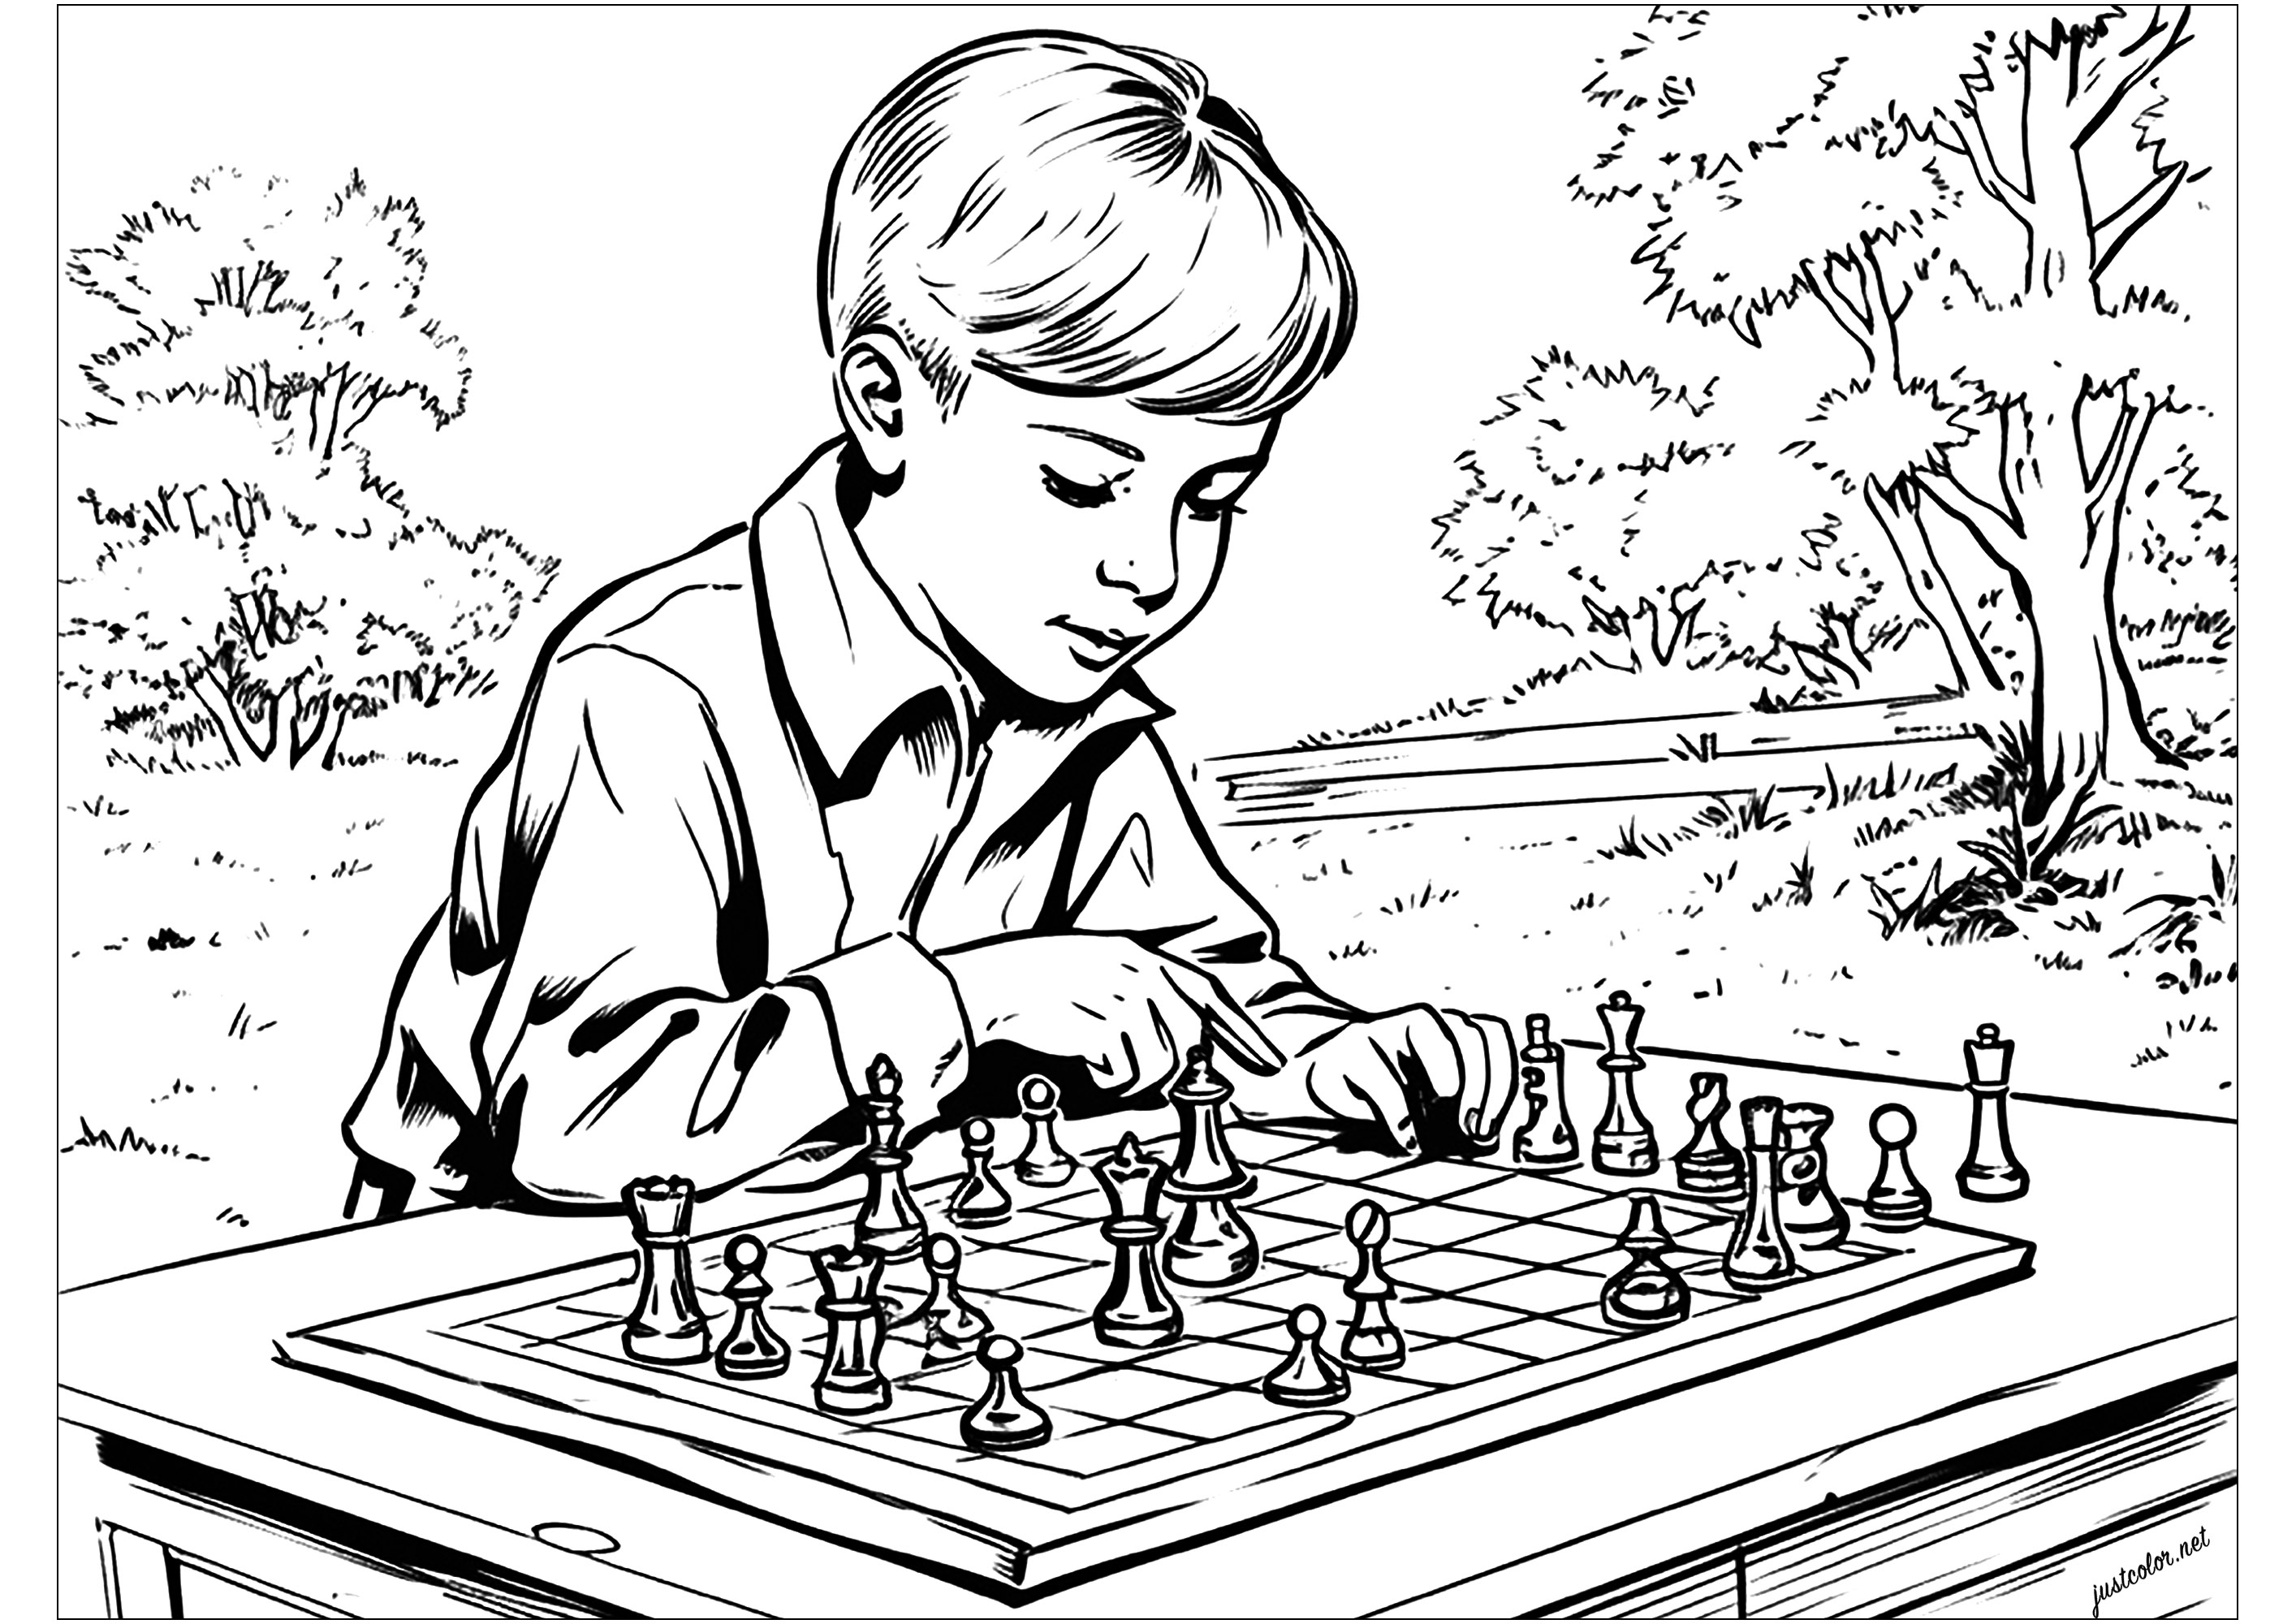 Colorare un bambino che gioca a scacchi. Uno stile ispirato alle illustrazioni di libri della metà del XX secolo